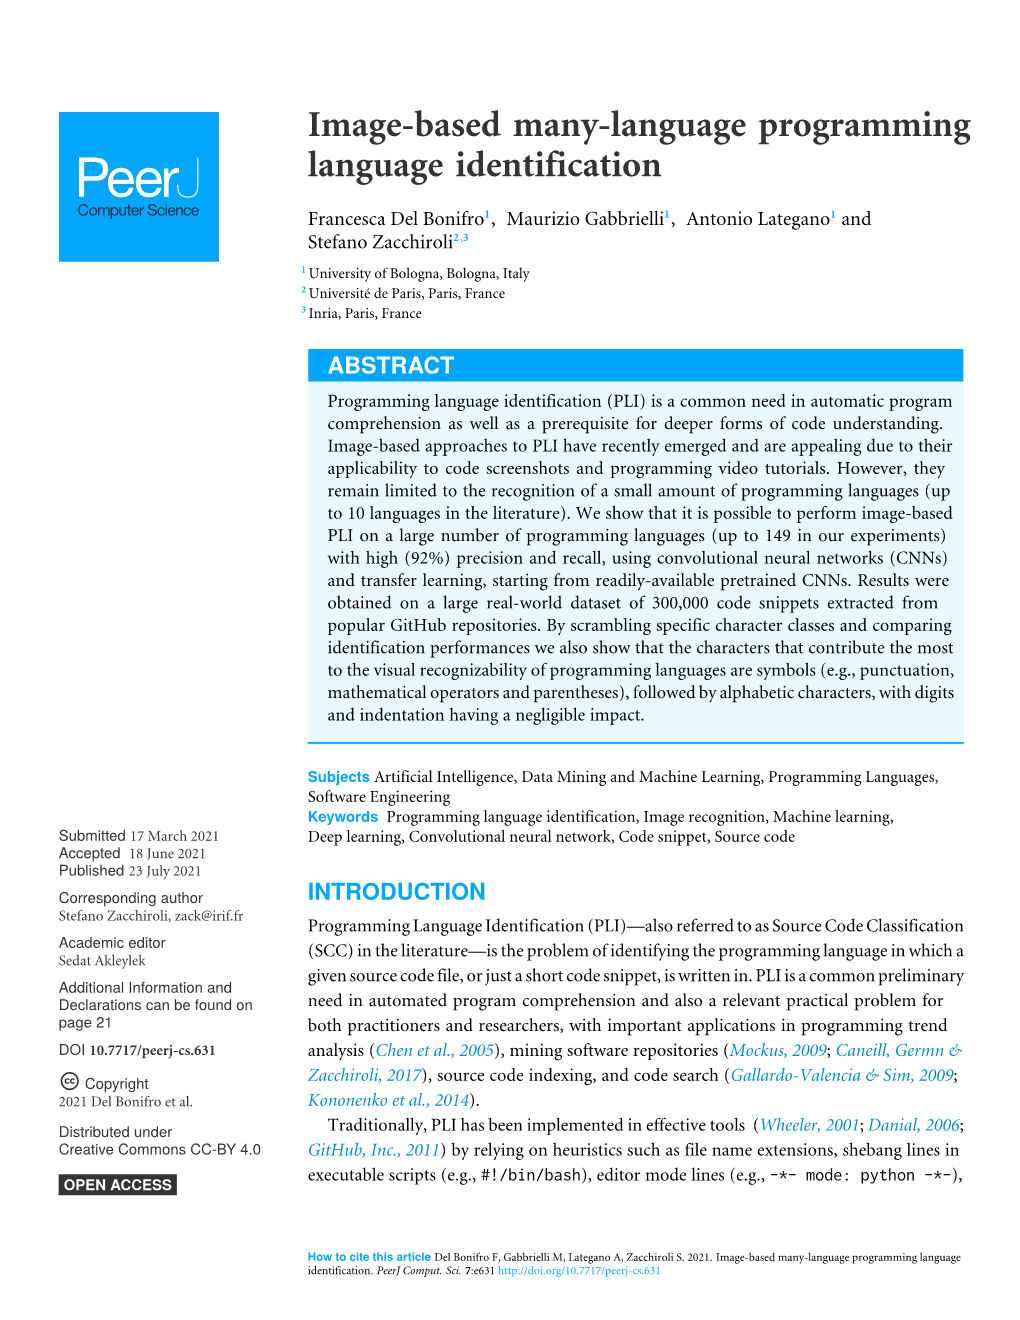 Image-Based Many-Language Programming Language Identification